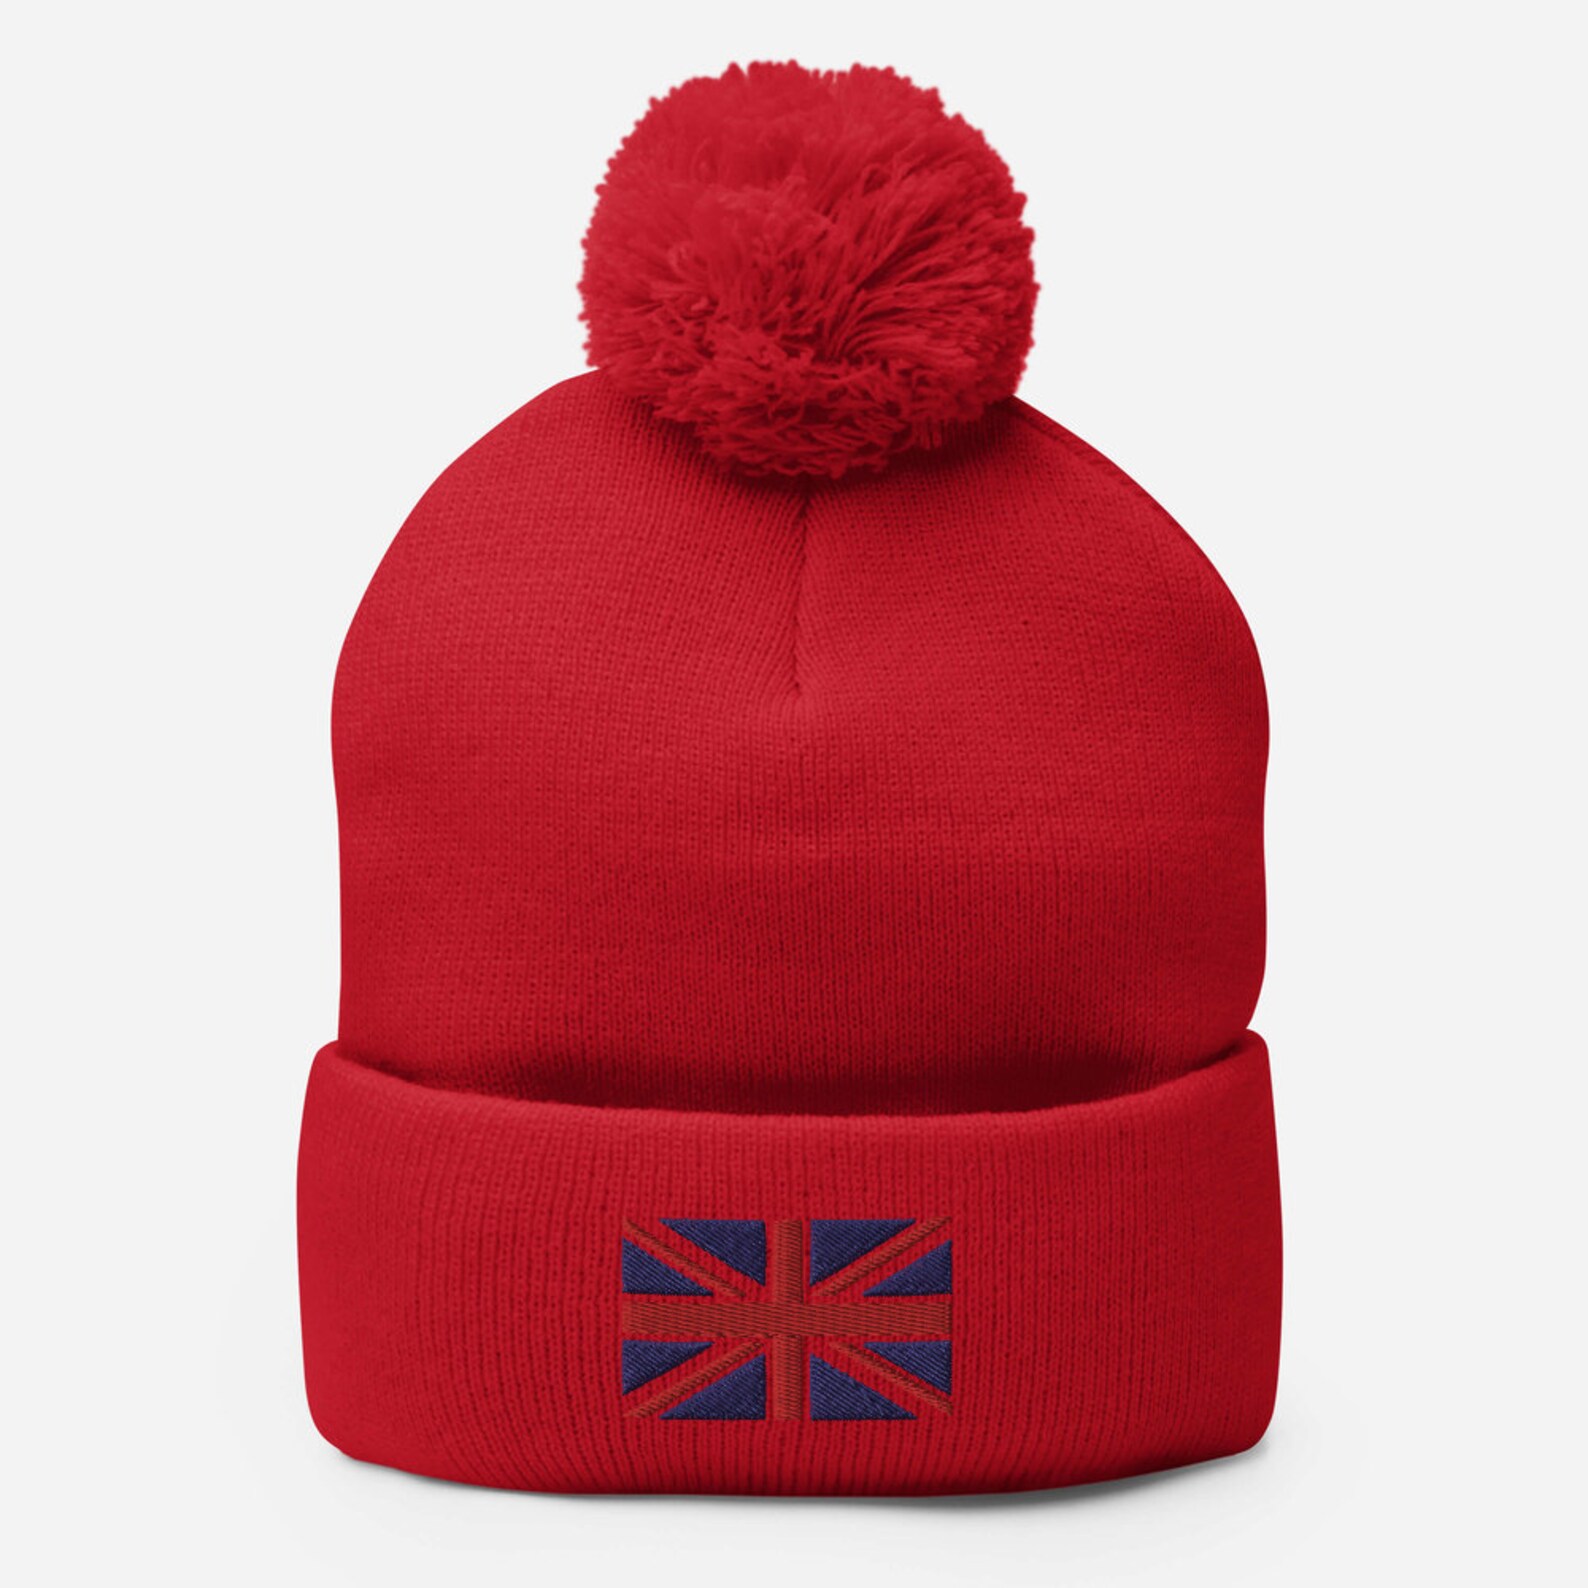 Pom-Pom Beanie Schädel warmen Hut mit England Flagge | Etsy